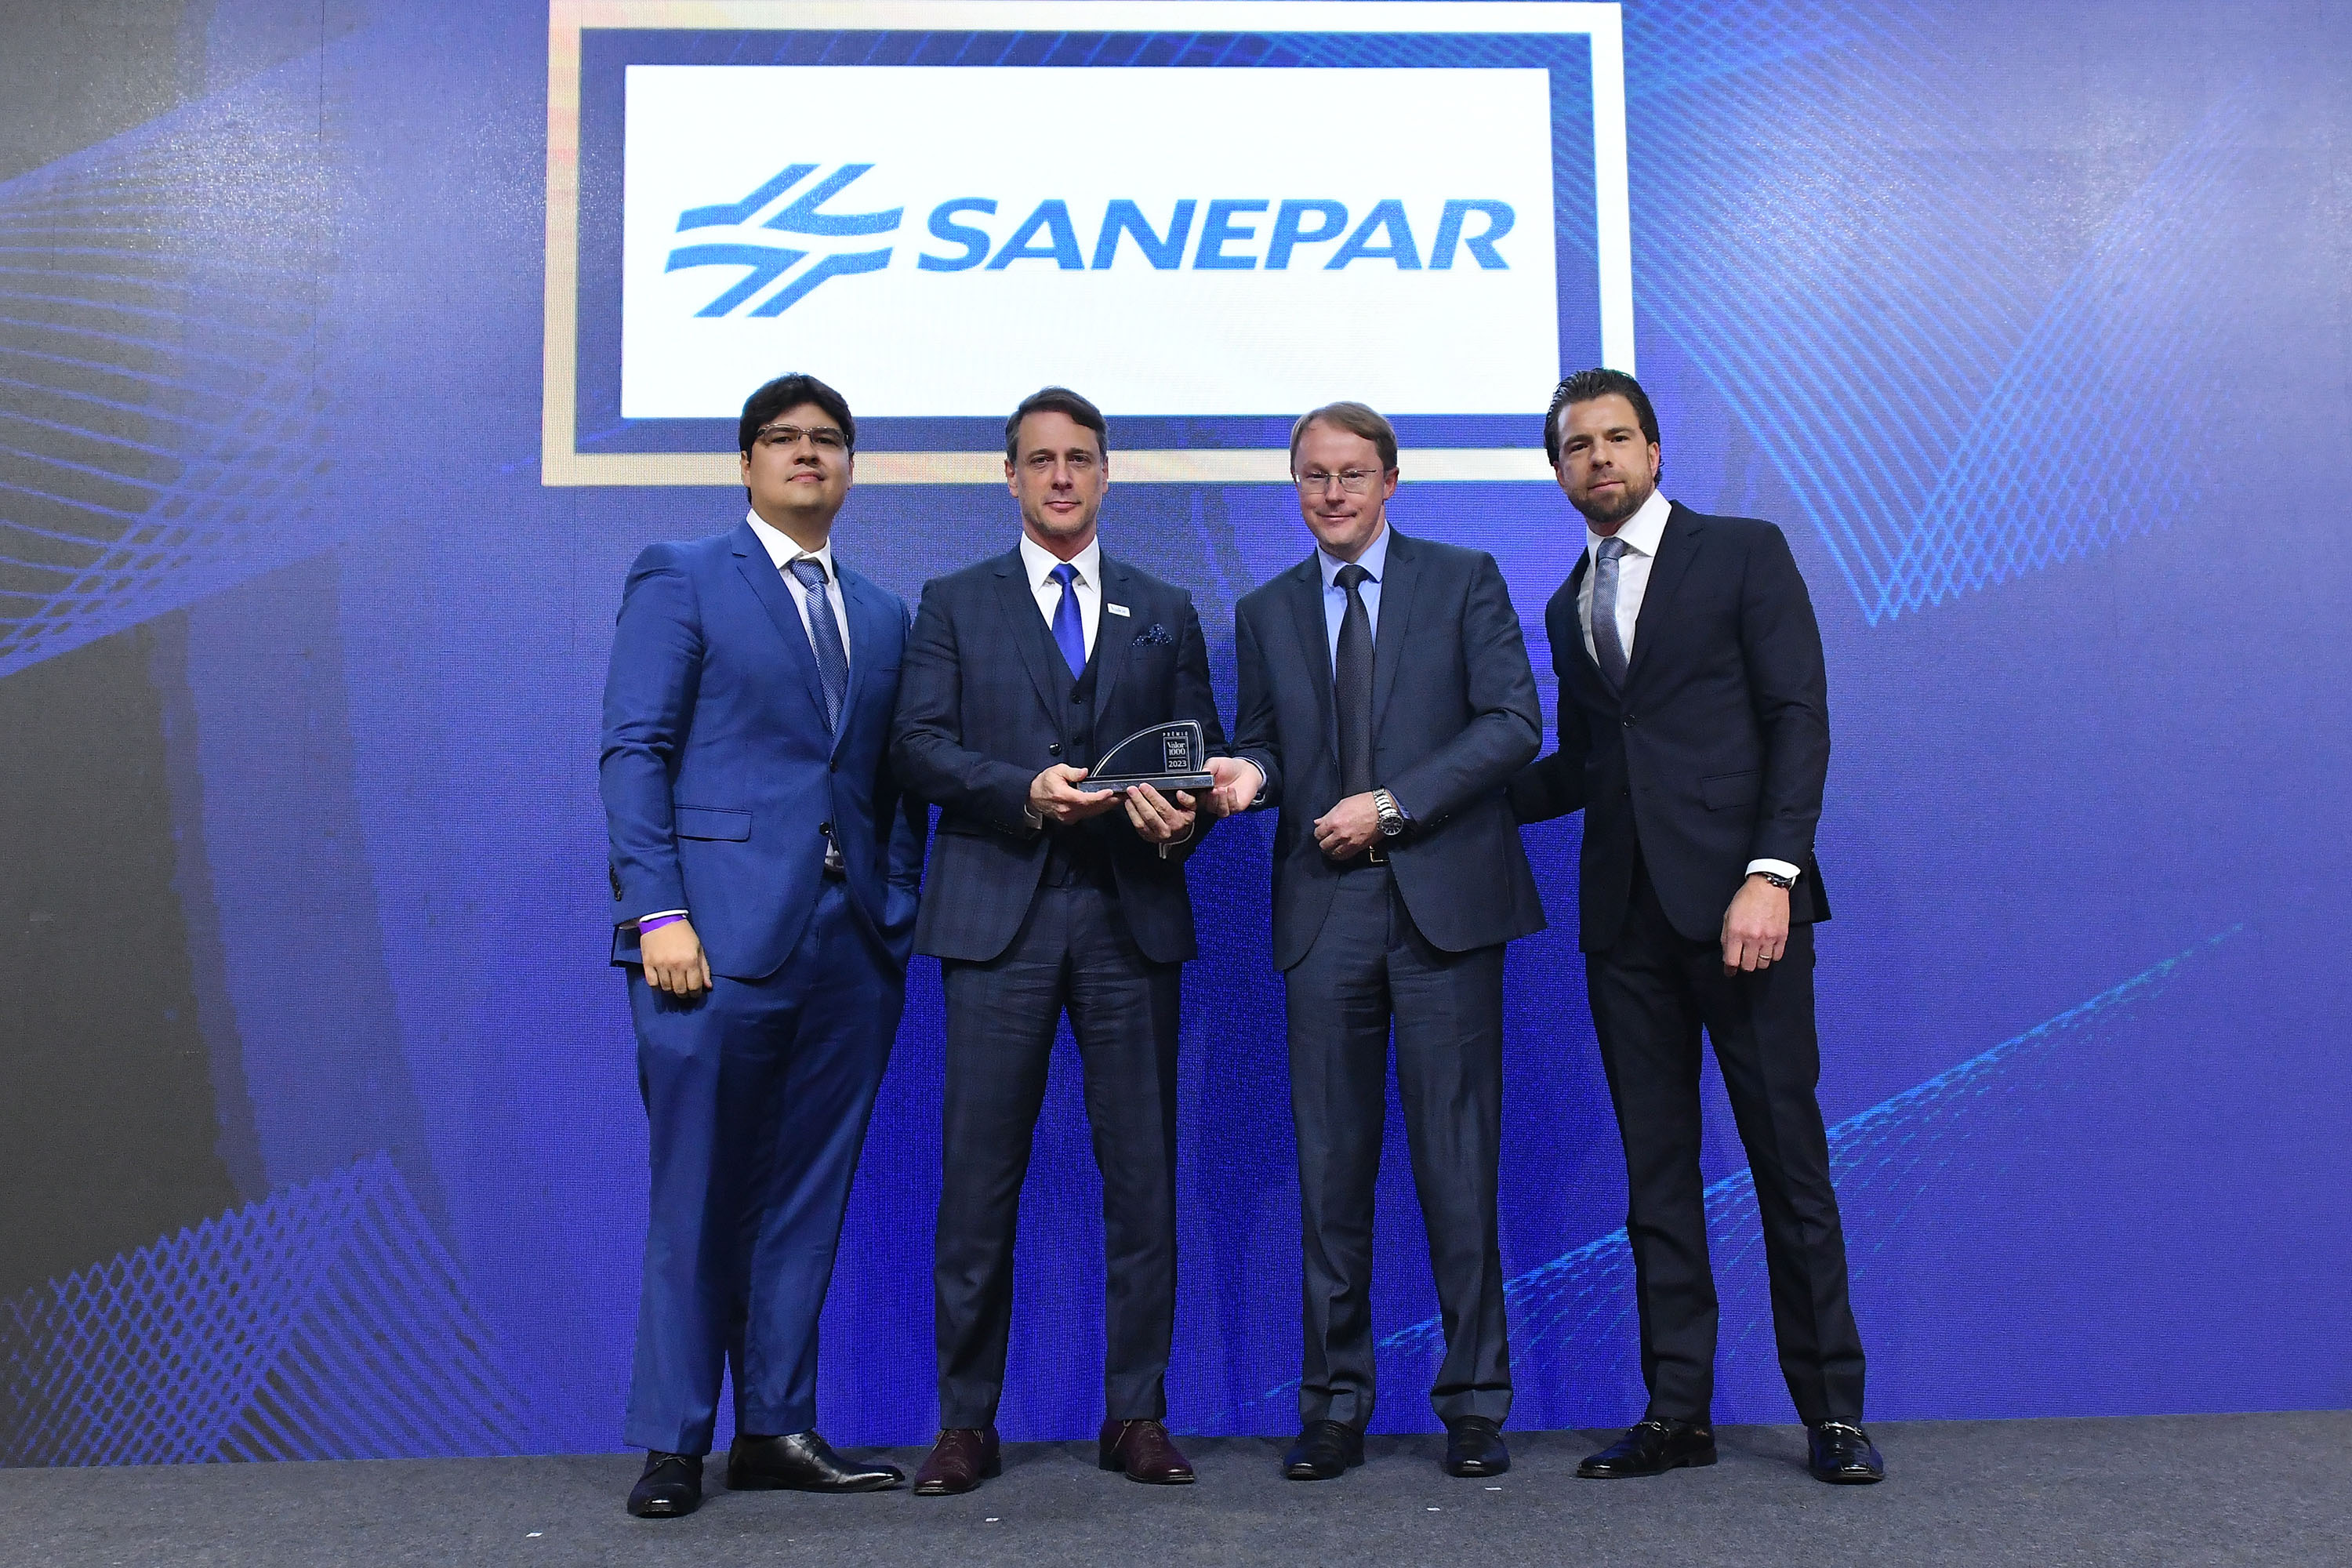 Sanepar é a melhor empresa de saneamento do Brasil, aponta Valor Econômico Foto: Sanepar